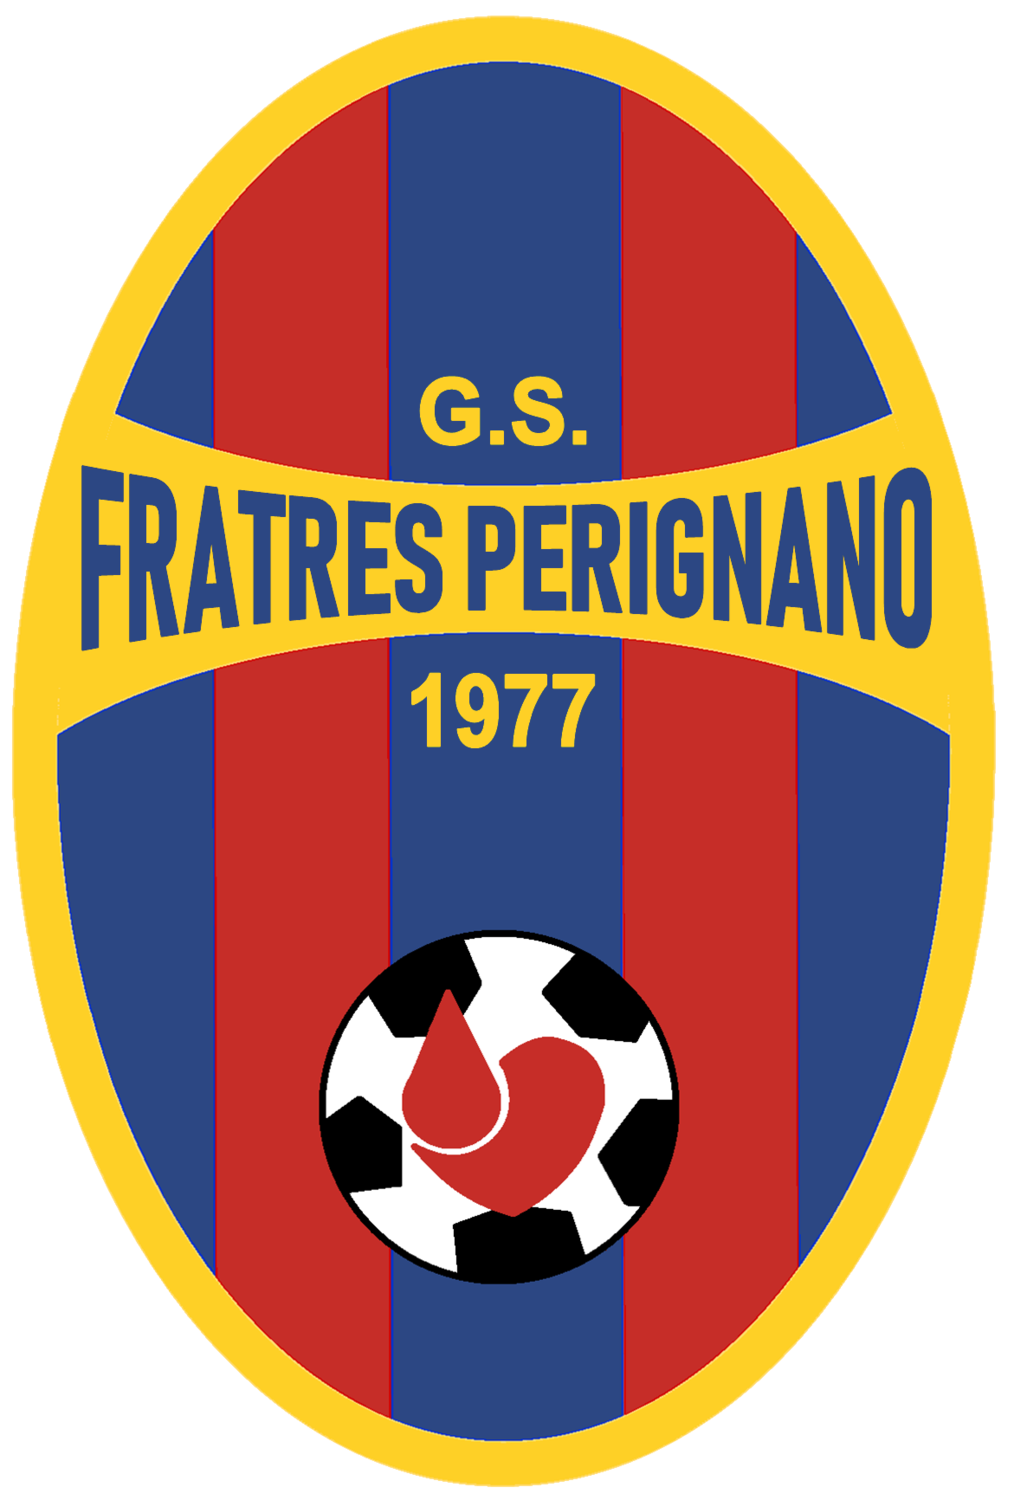 Wappen Fratres Perignano 2019  84413